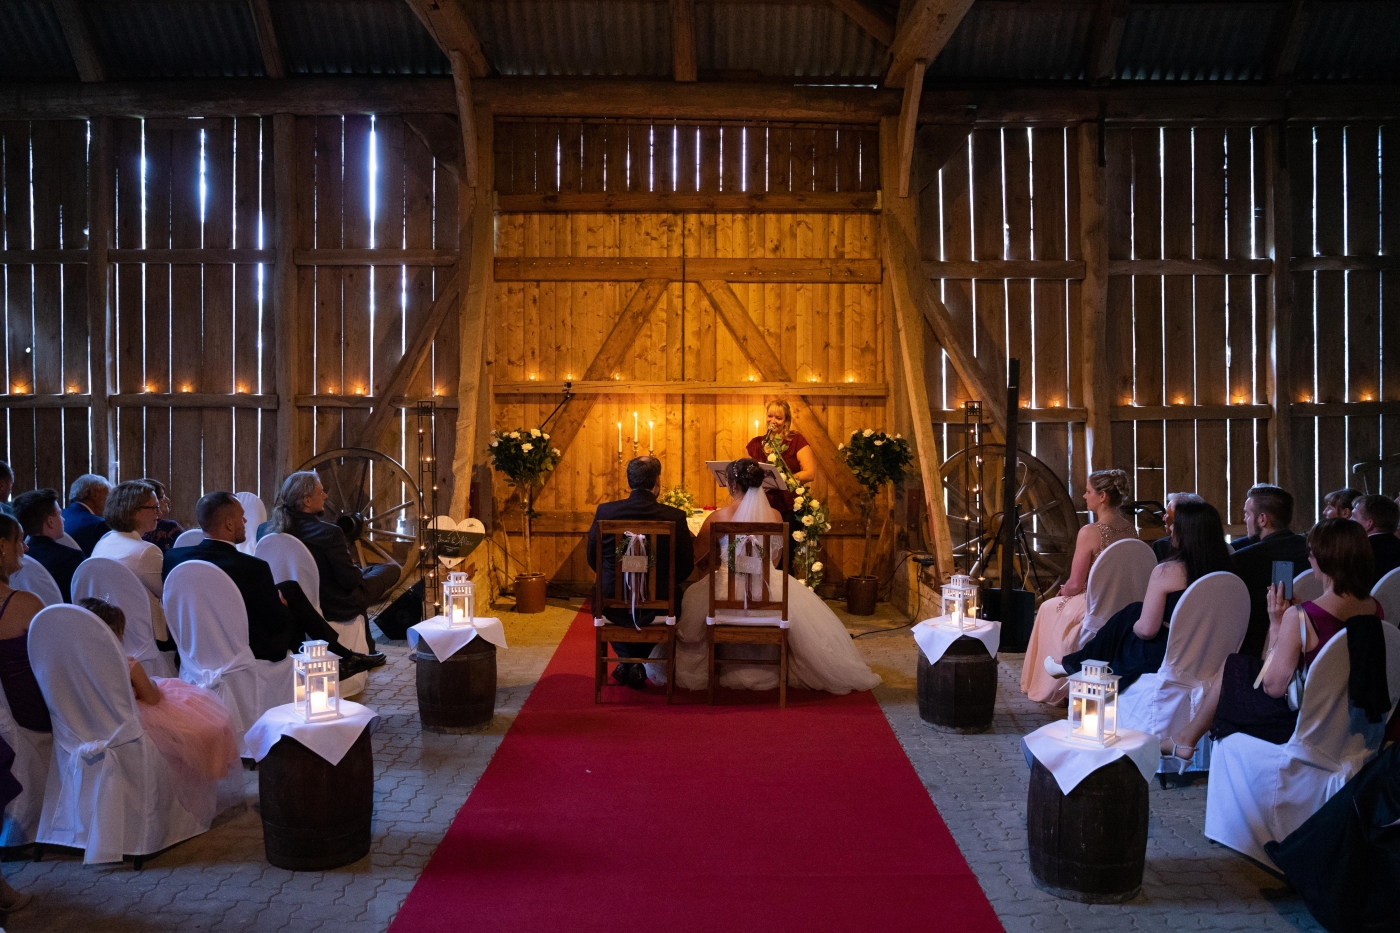 Eine Braut und ein Bräutigam sitzen bei ihrer Hochzeit in einer rustikalen Scheune, umgeben von Gästen und festlicher Dekoration.